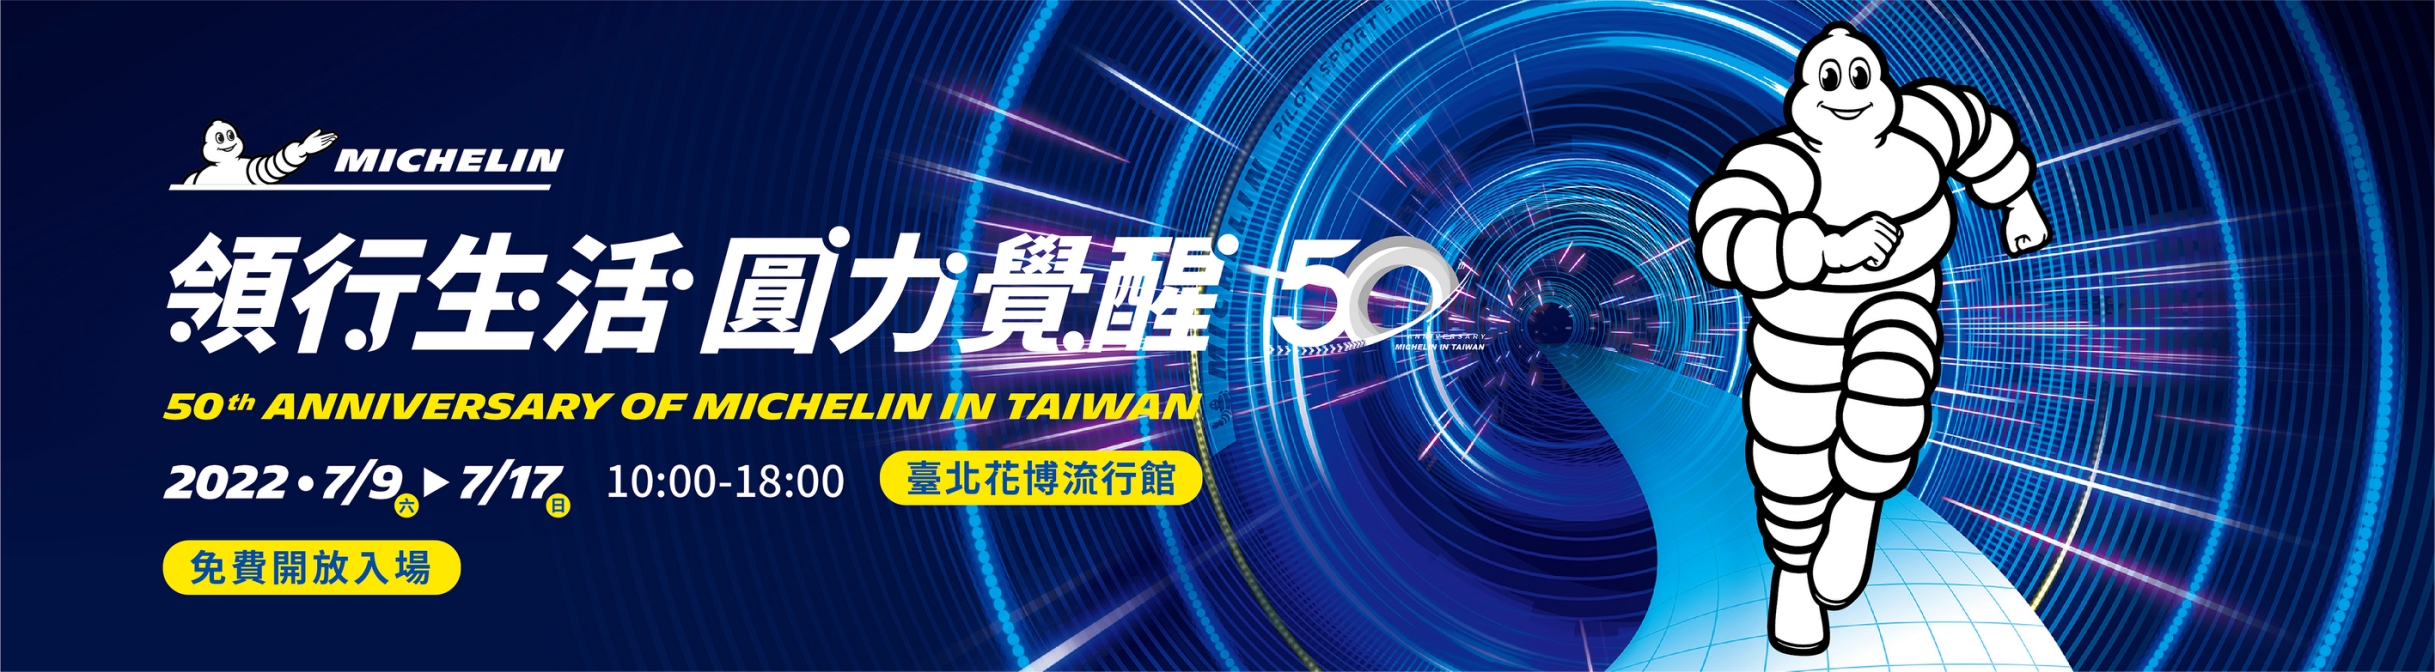 台灣米其林在台50周年展覽